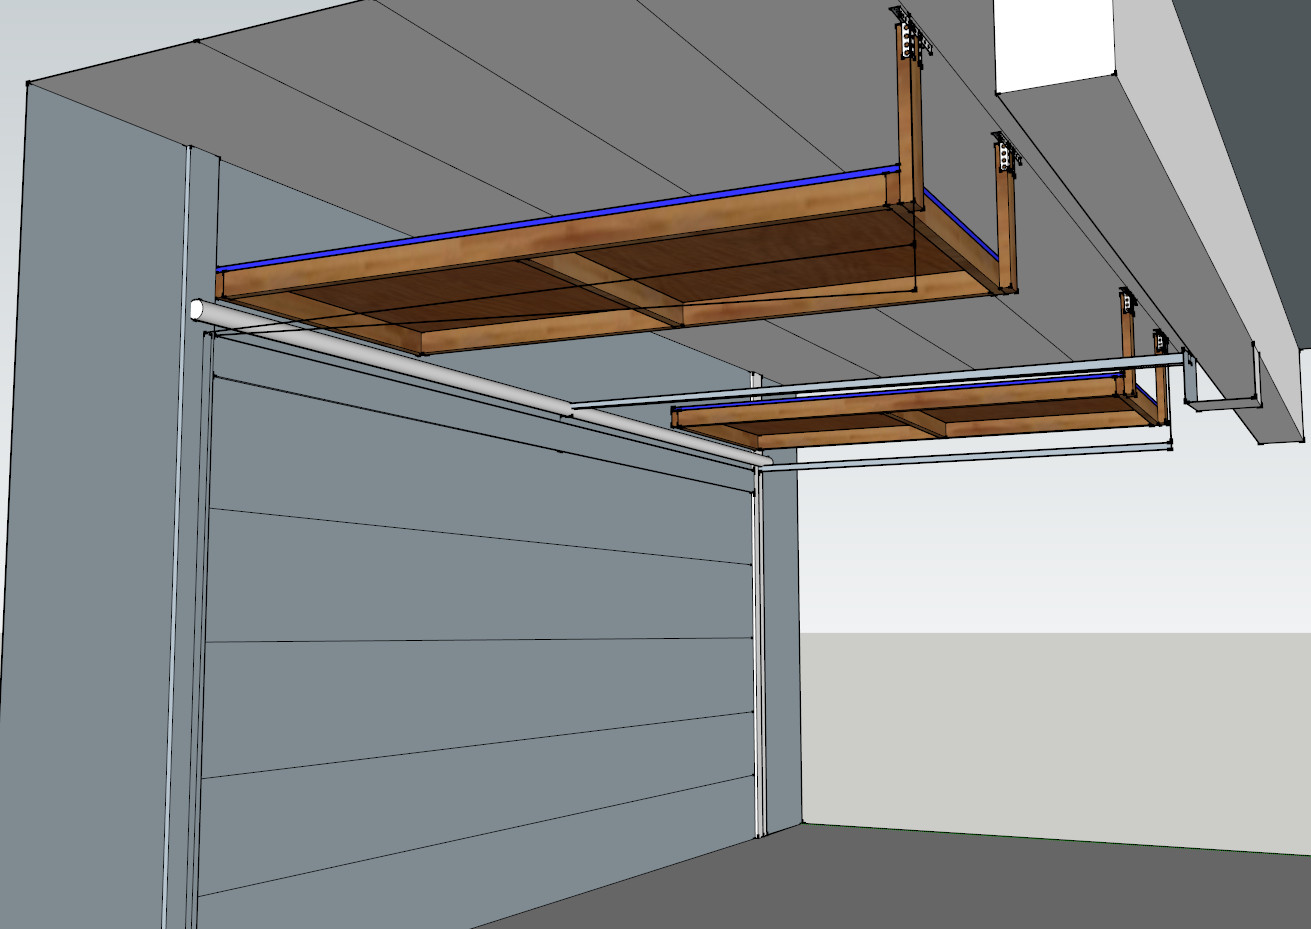 Best ideas about Above Garage Storage
. Save or Pin Garage Door Storage Project DIY QuickCrafter Now.